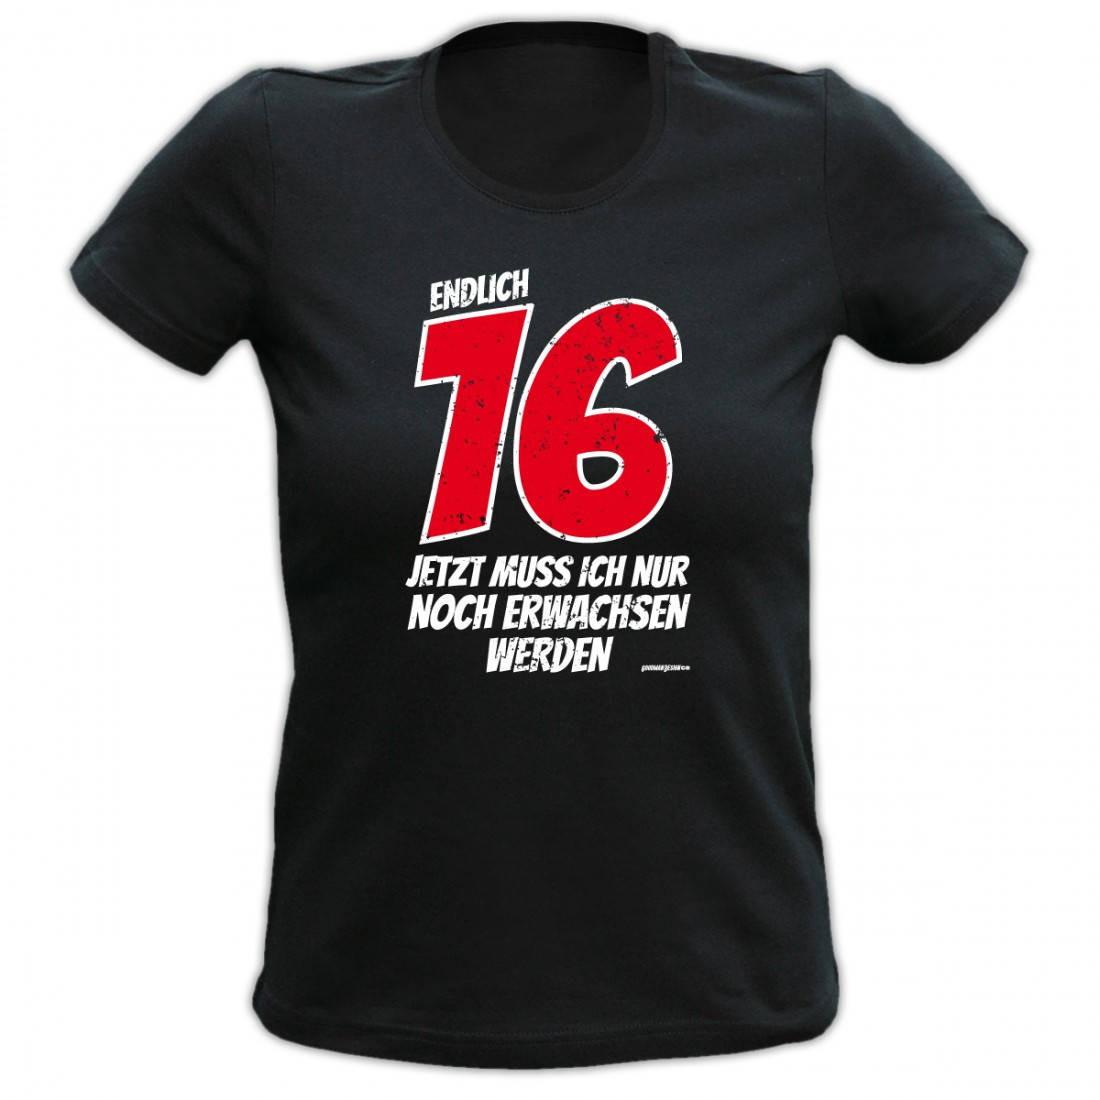 Coole Geschenke Zum 16
 T Shirt zum 16 Geburtstag für Teenies Endlich 16